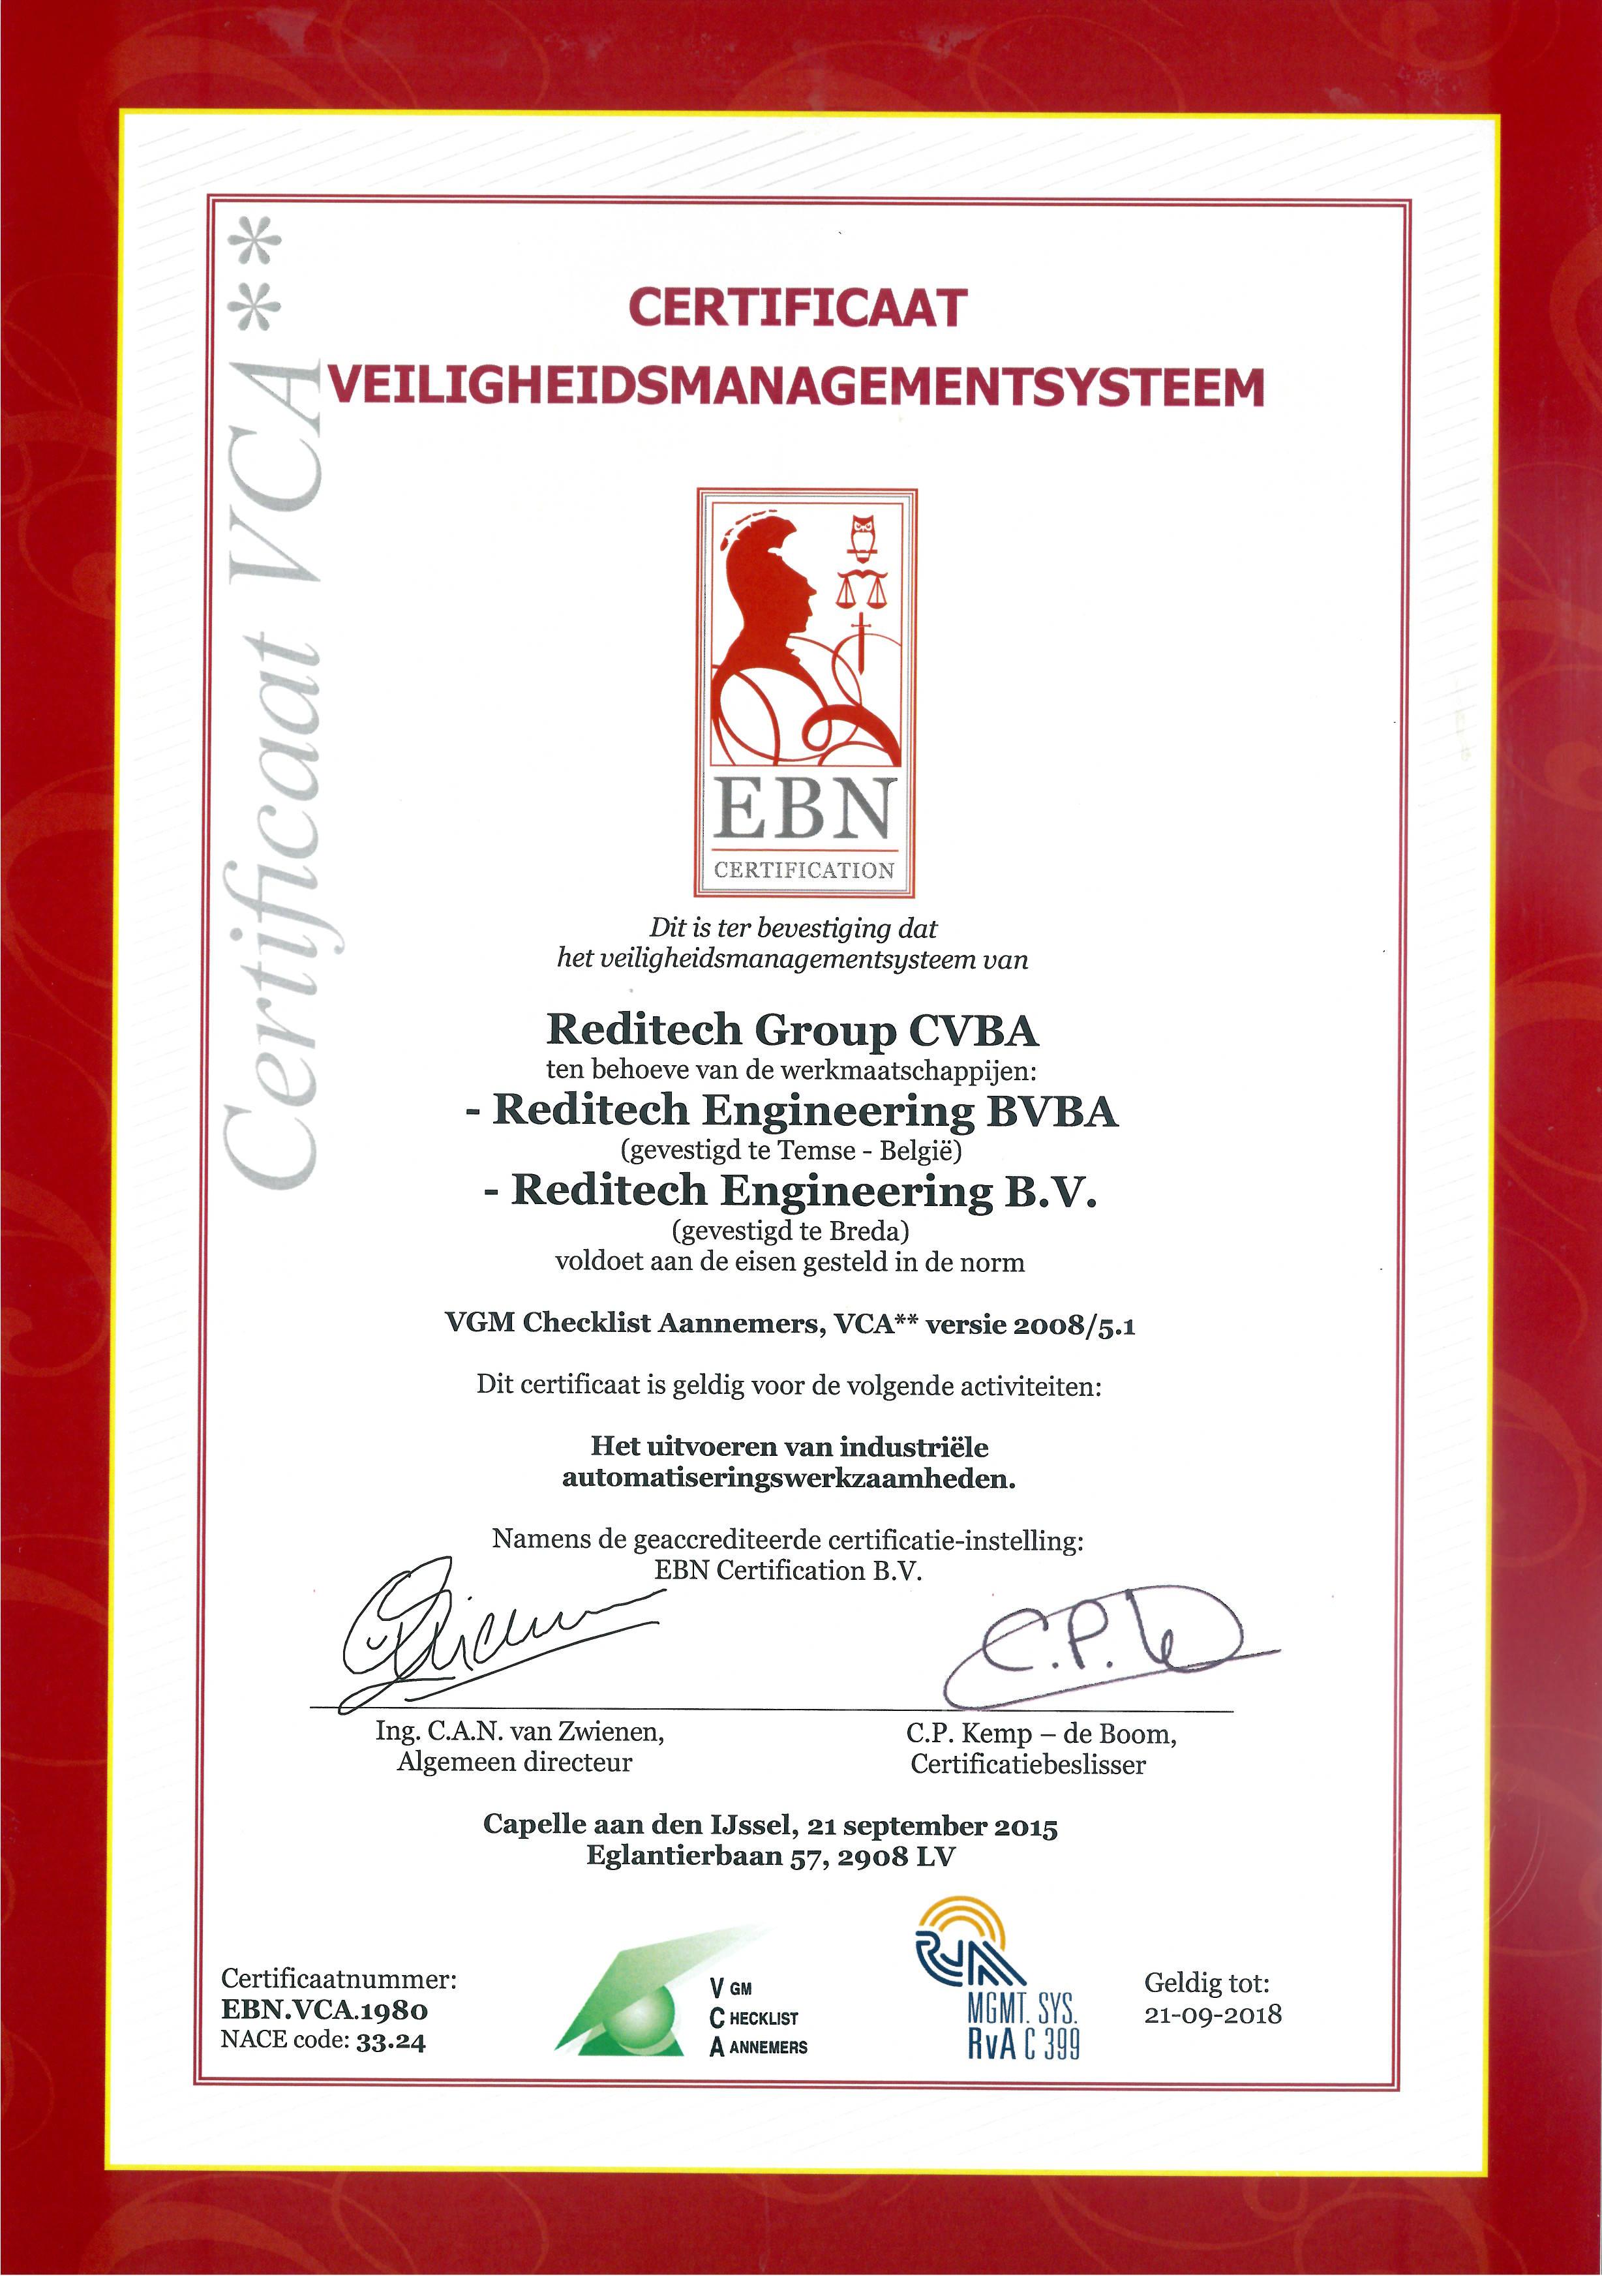 Yitch - certificate vca 1980-1